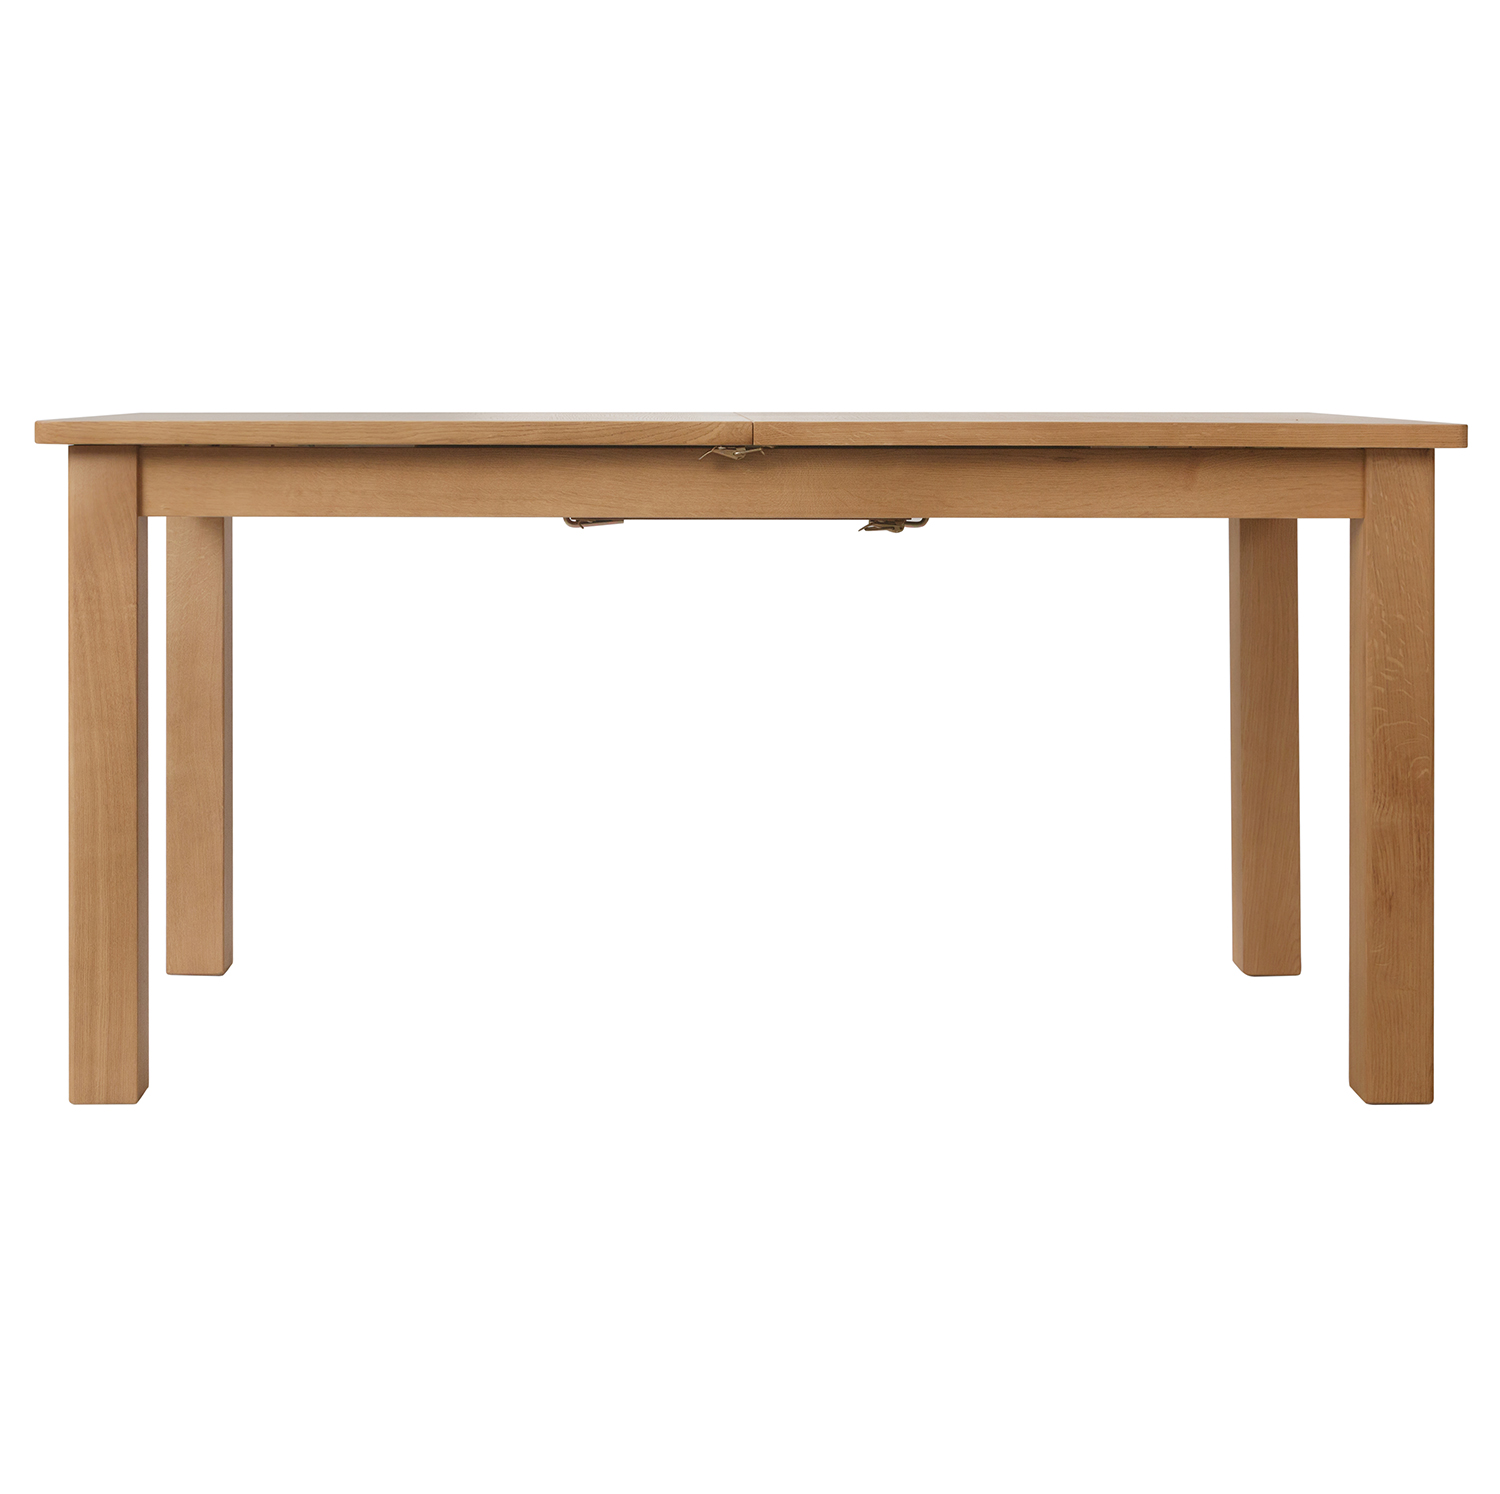 Chiltern Oak 120-160cm Extending Table